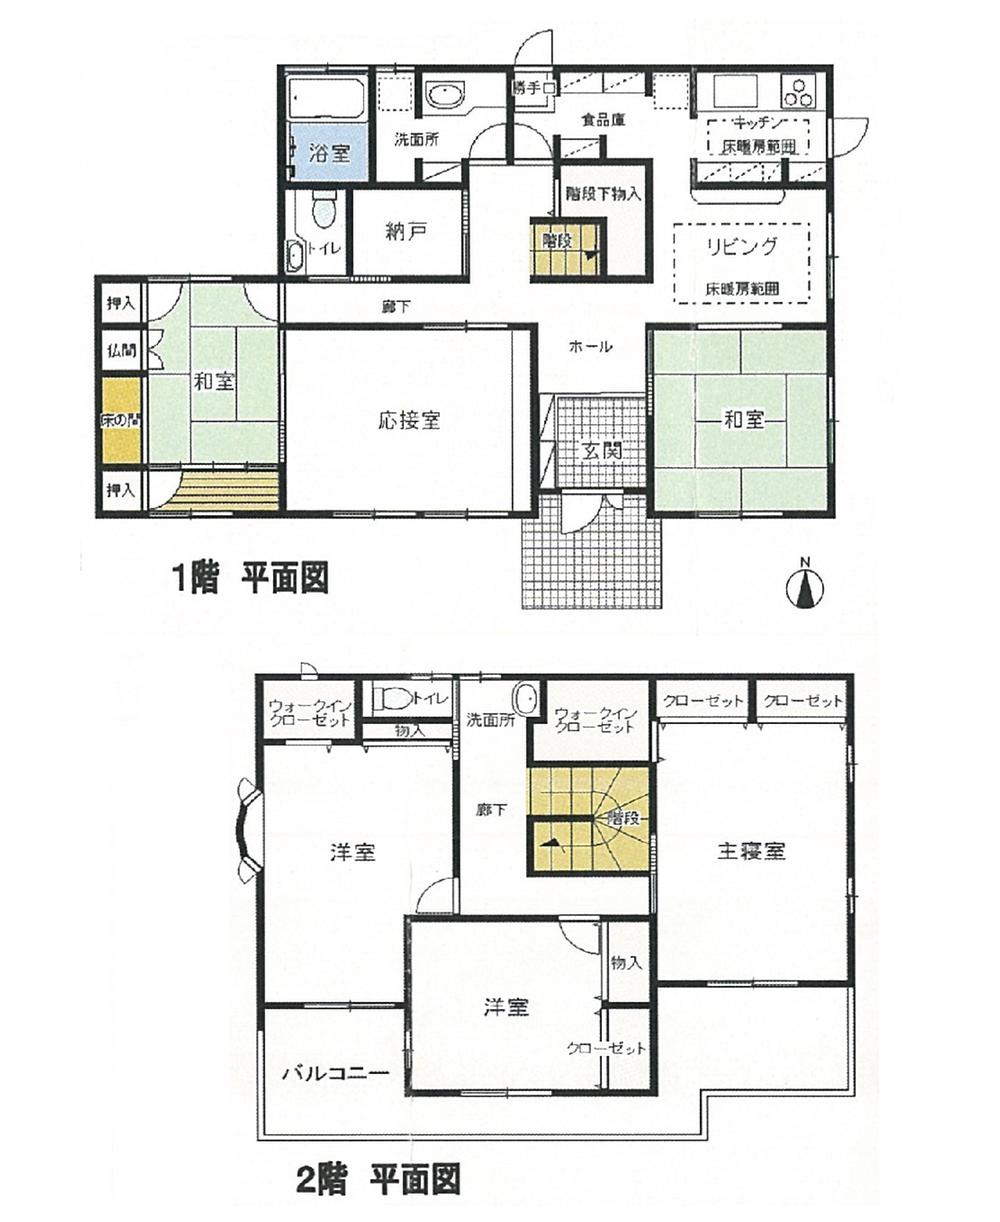 Floor plan. 59,800,000 yen, 6LDK + S (storeroom), Land area 3,558.53 sq m , Building area 193.68 sq m